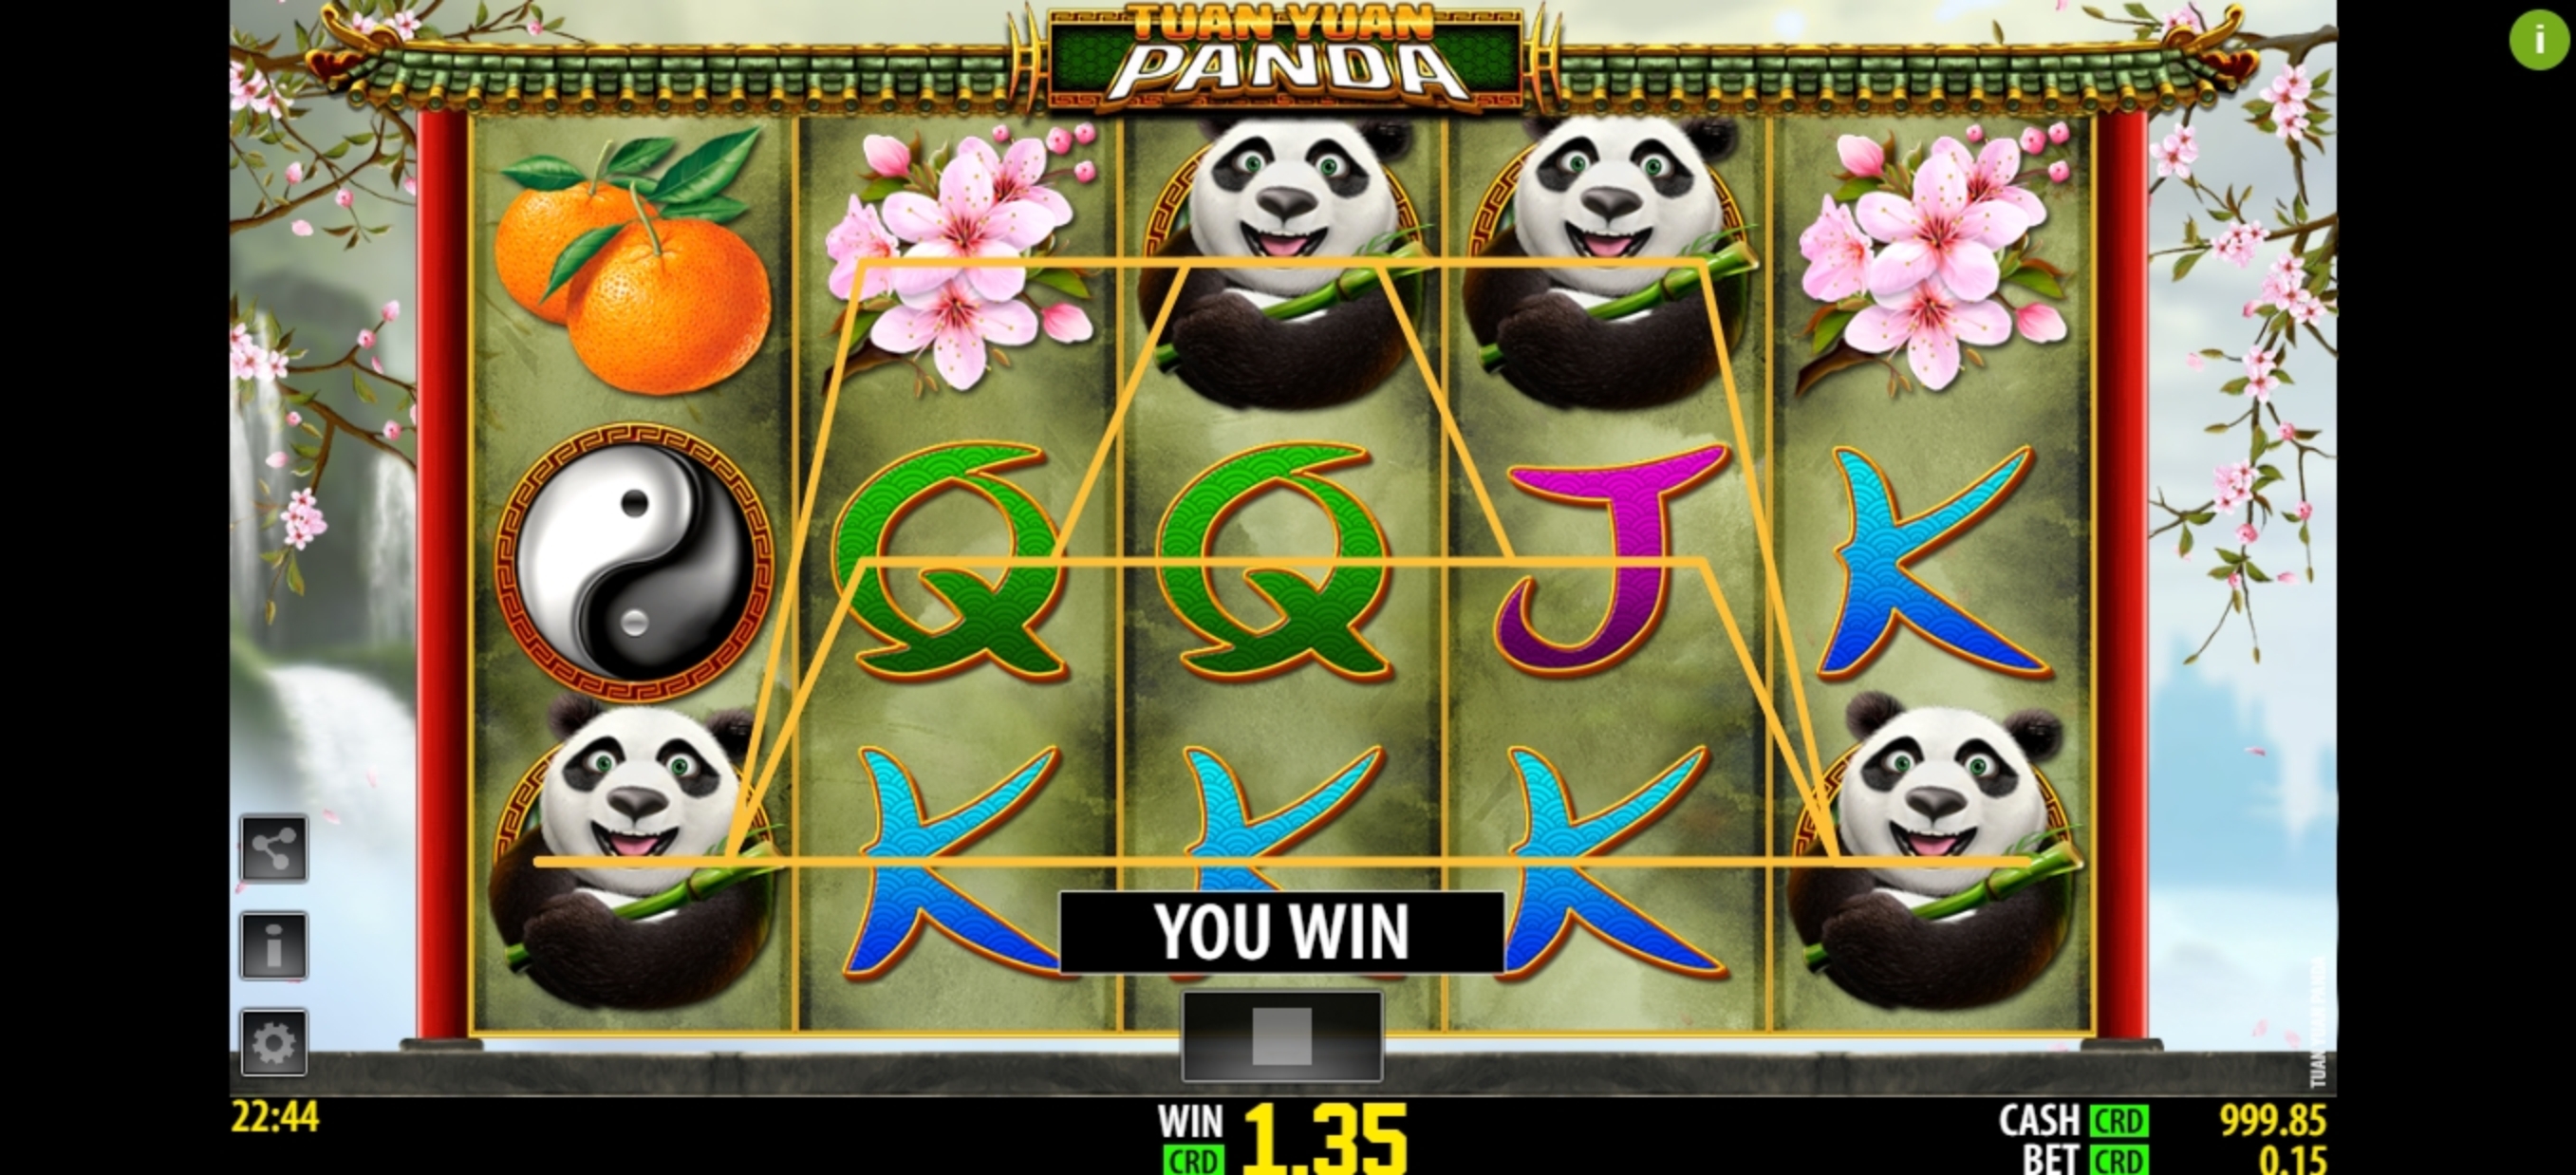 Win Money in Tuan Yuan Panda Free Slot Game by World Match